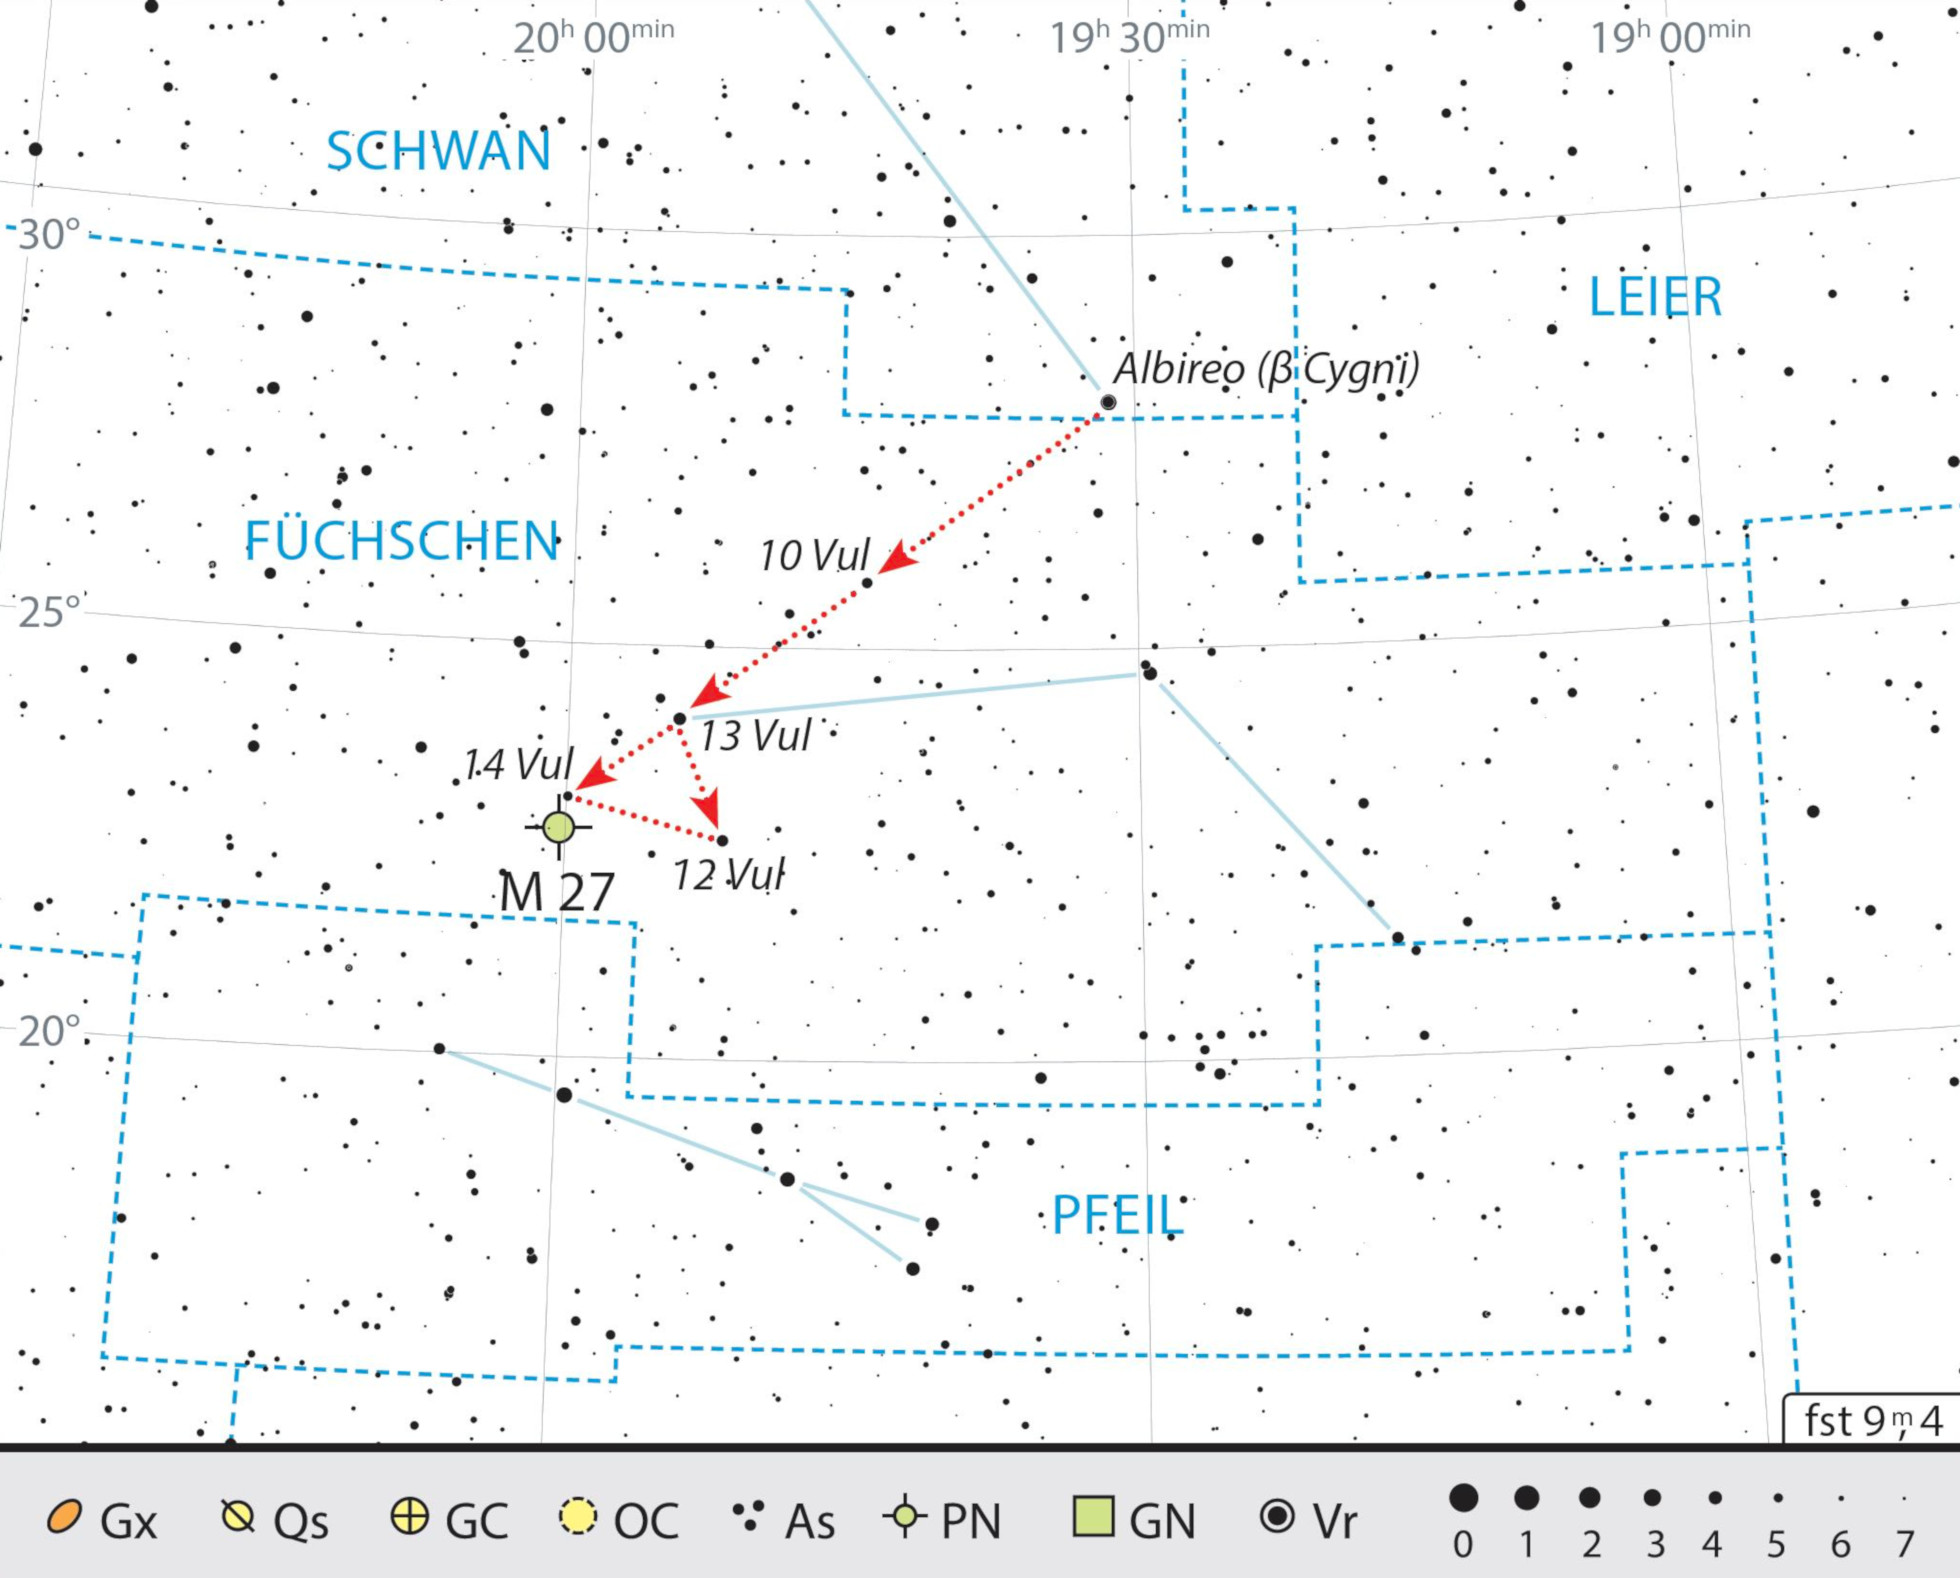 Mappa celeste per Messier 27. J. Scholten